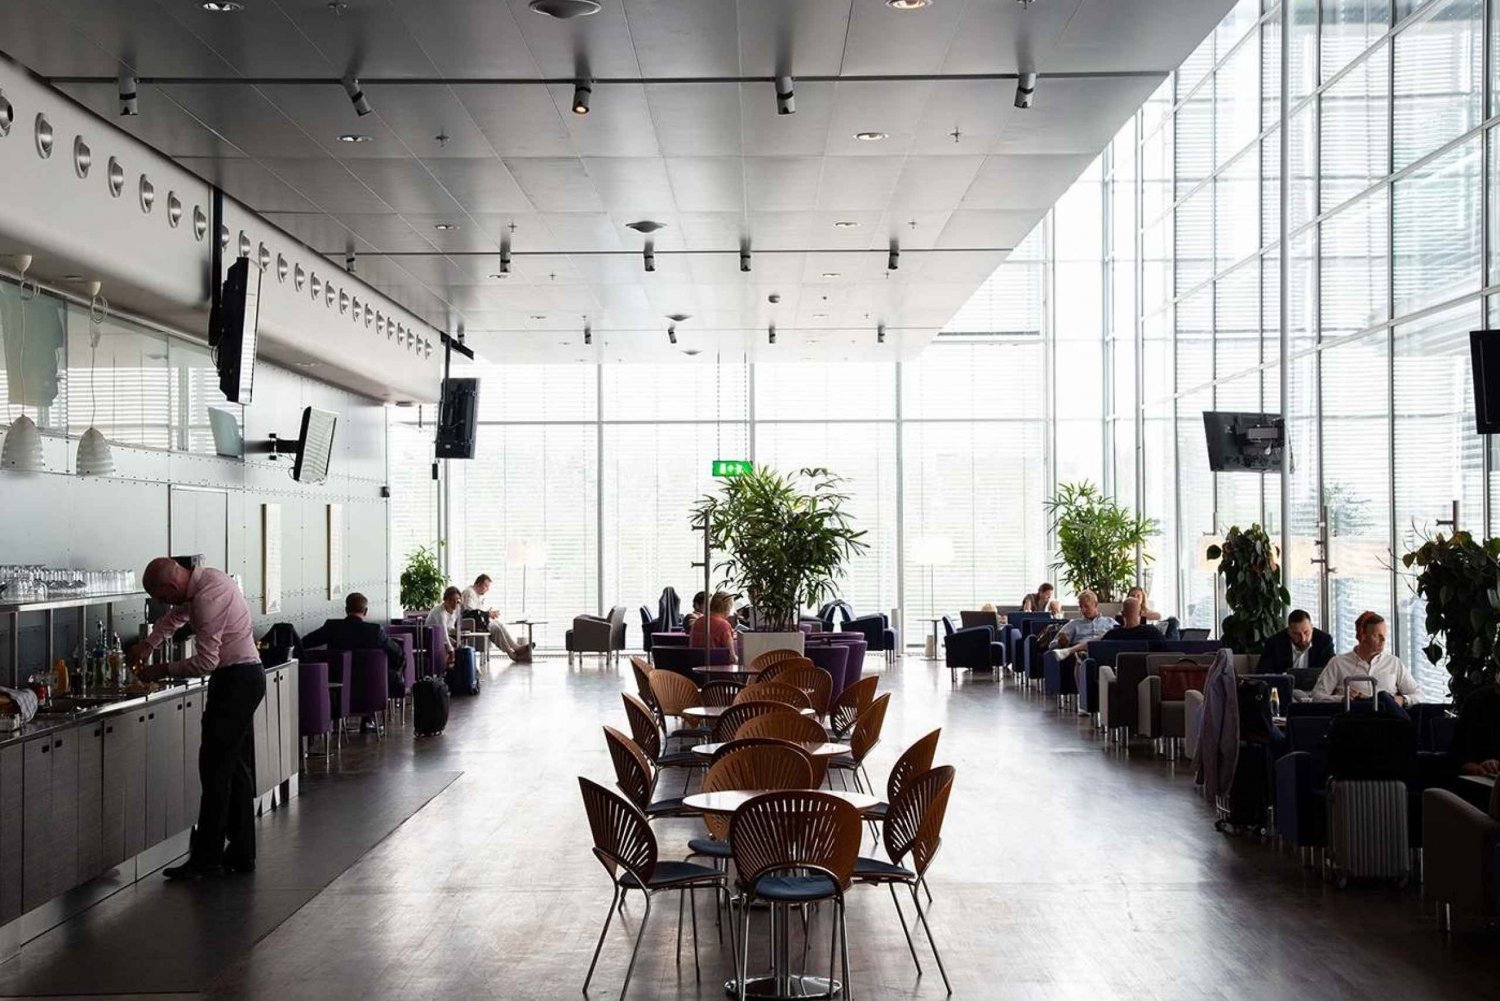 Aeroporto de Estocolmo Arlanda (ARN): entrada Premium Lounge